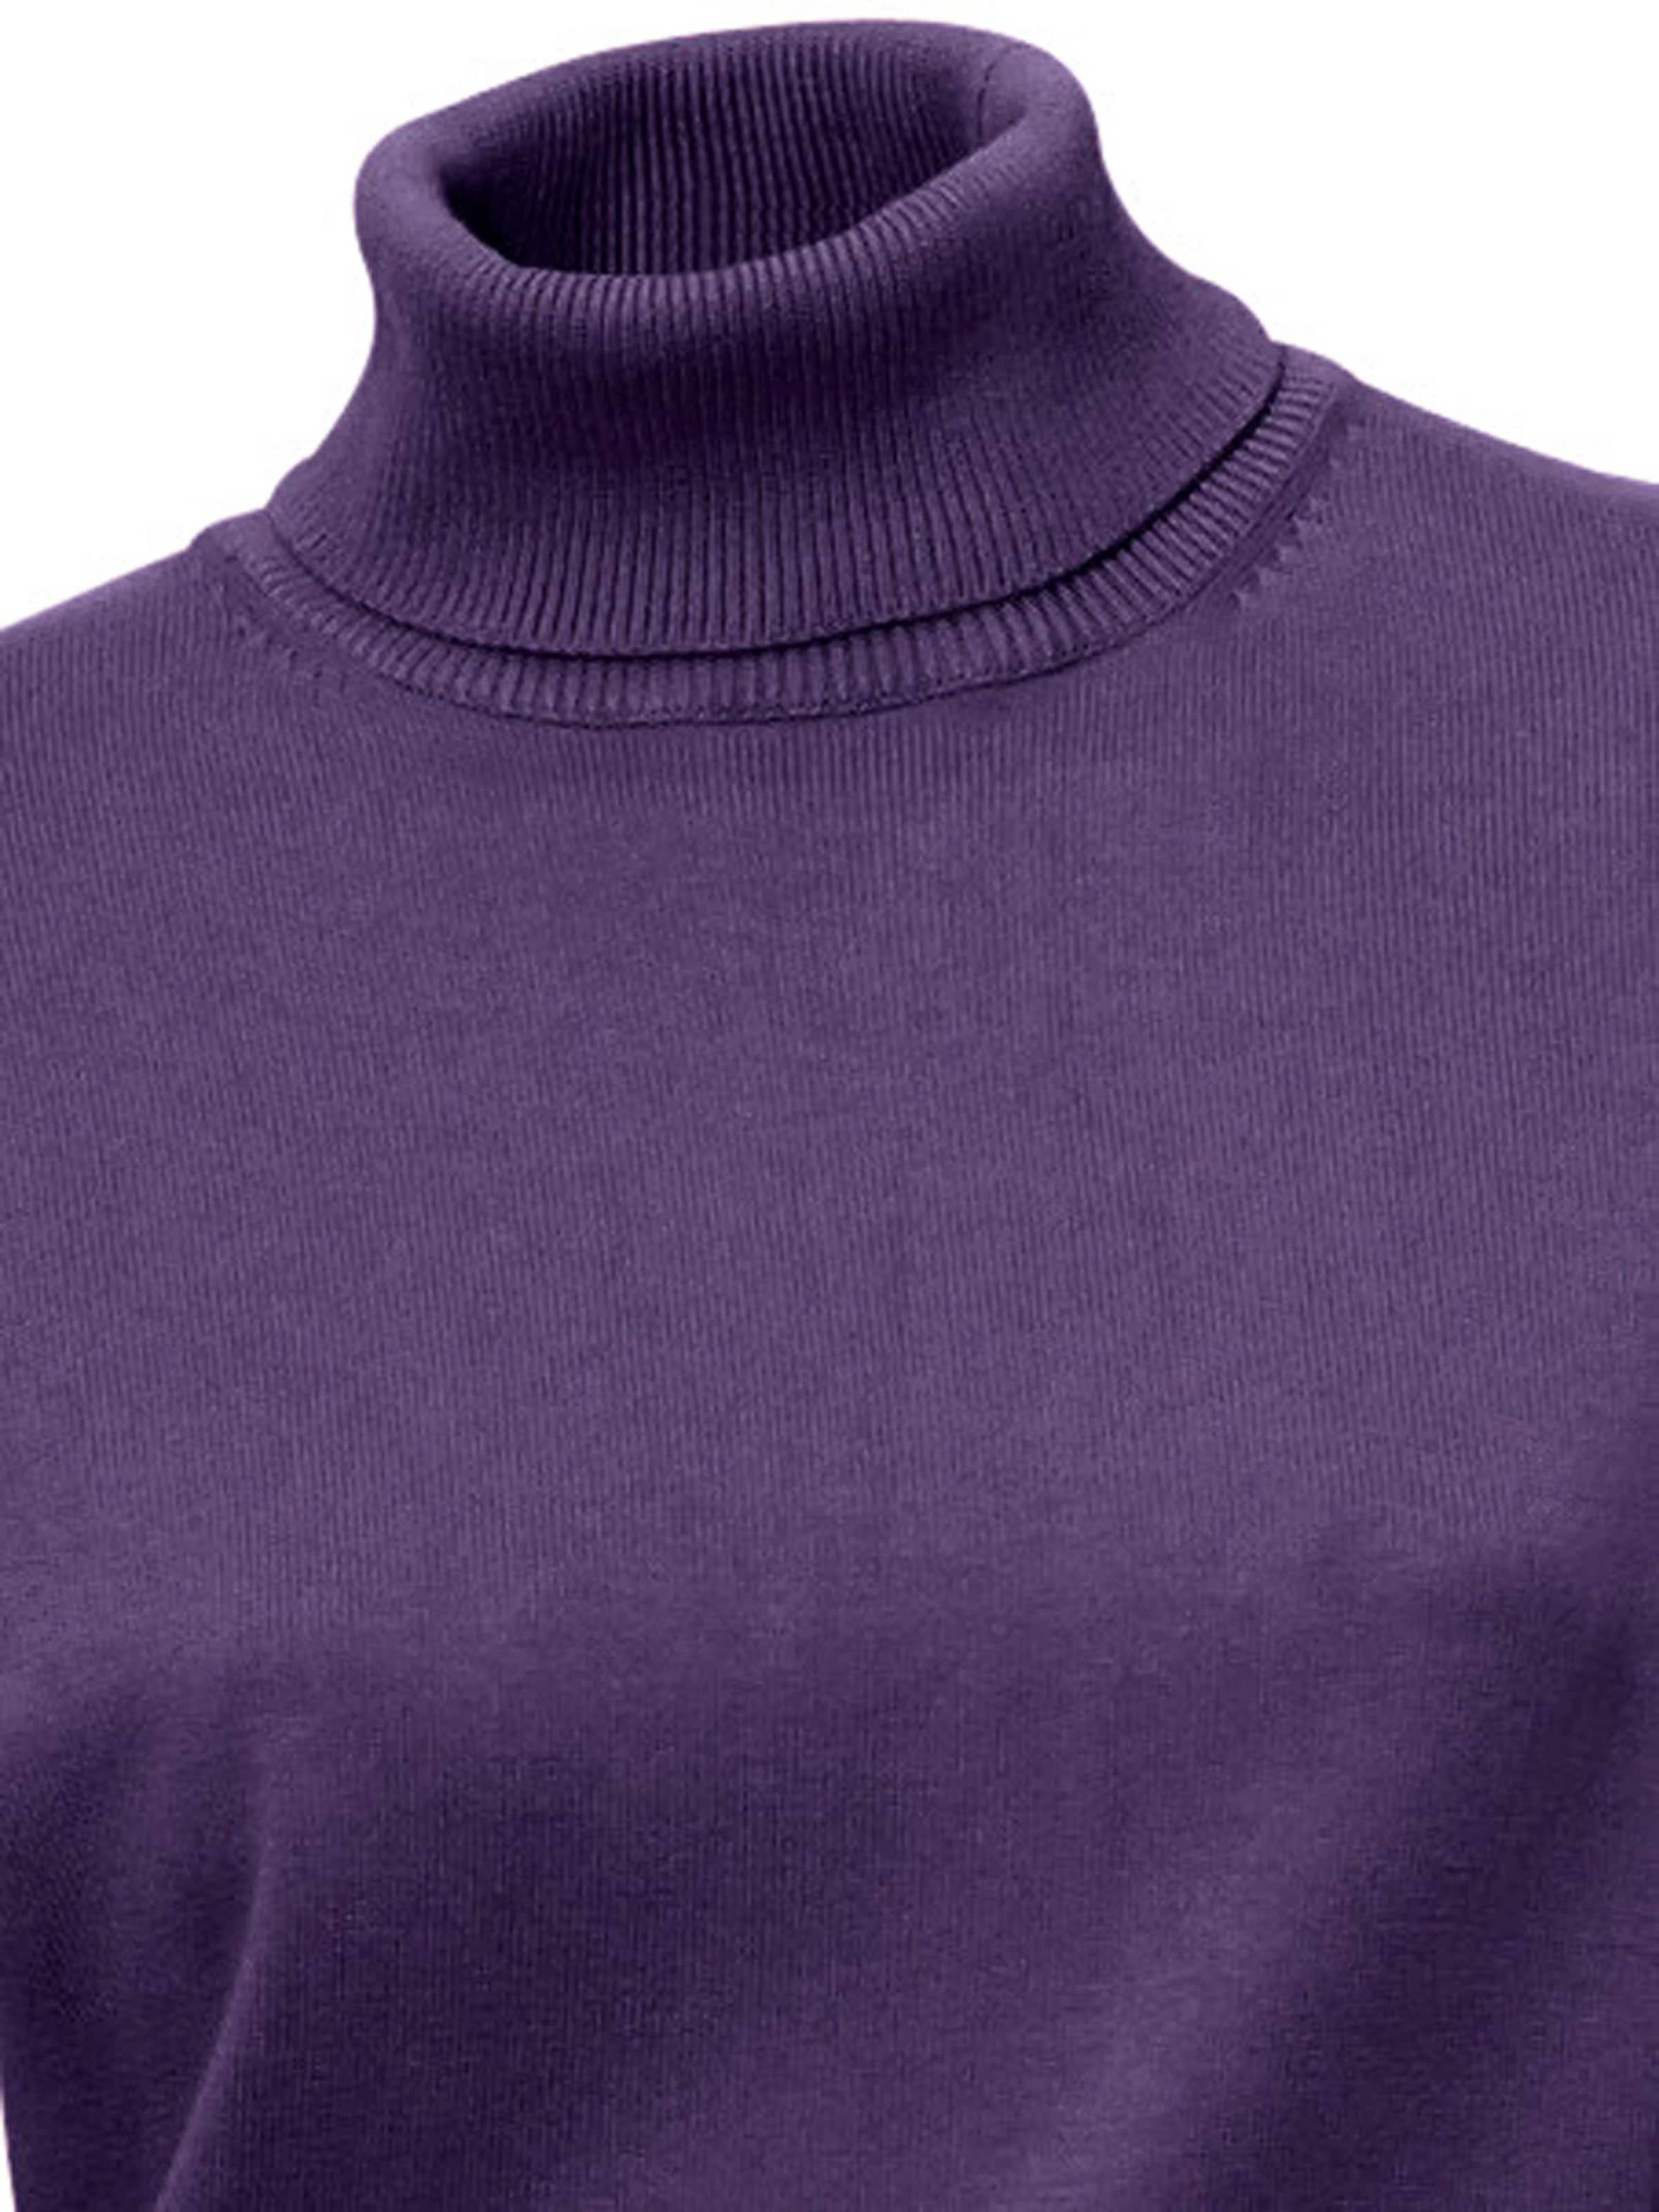 Damenmode Pullover Linea Tesini Rollkragen-Pullover in pflaume 